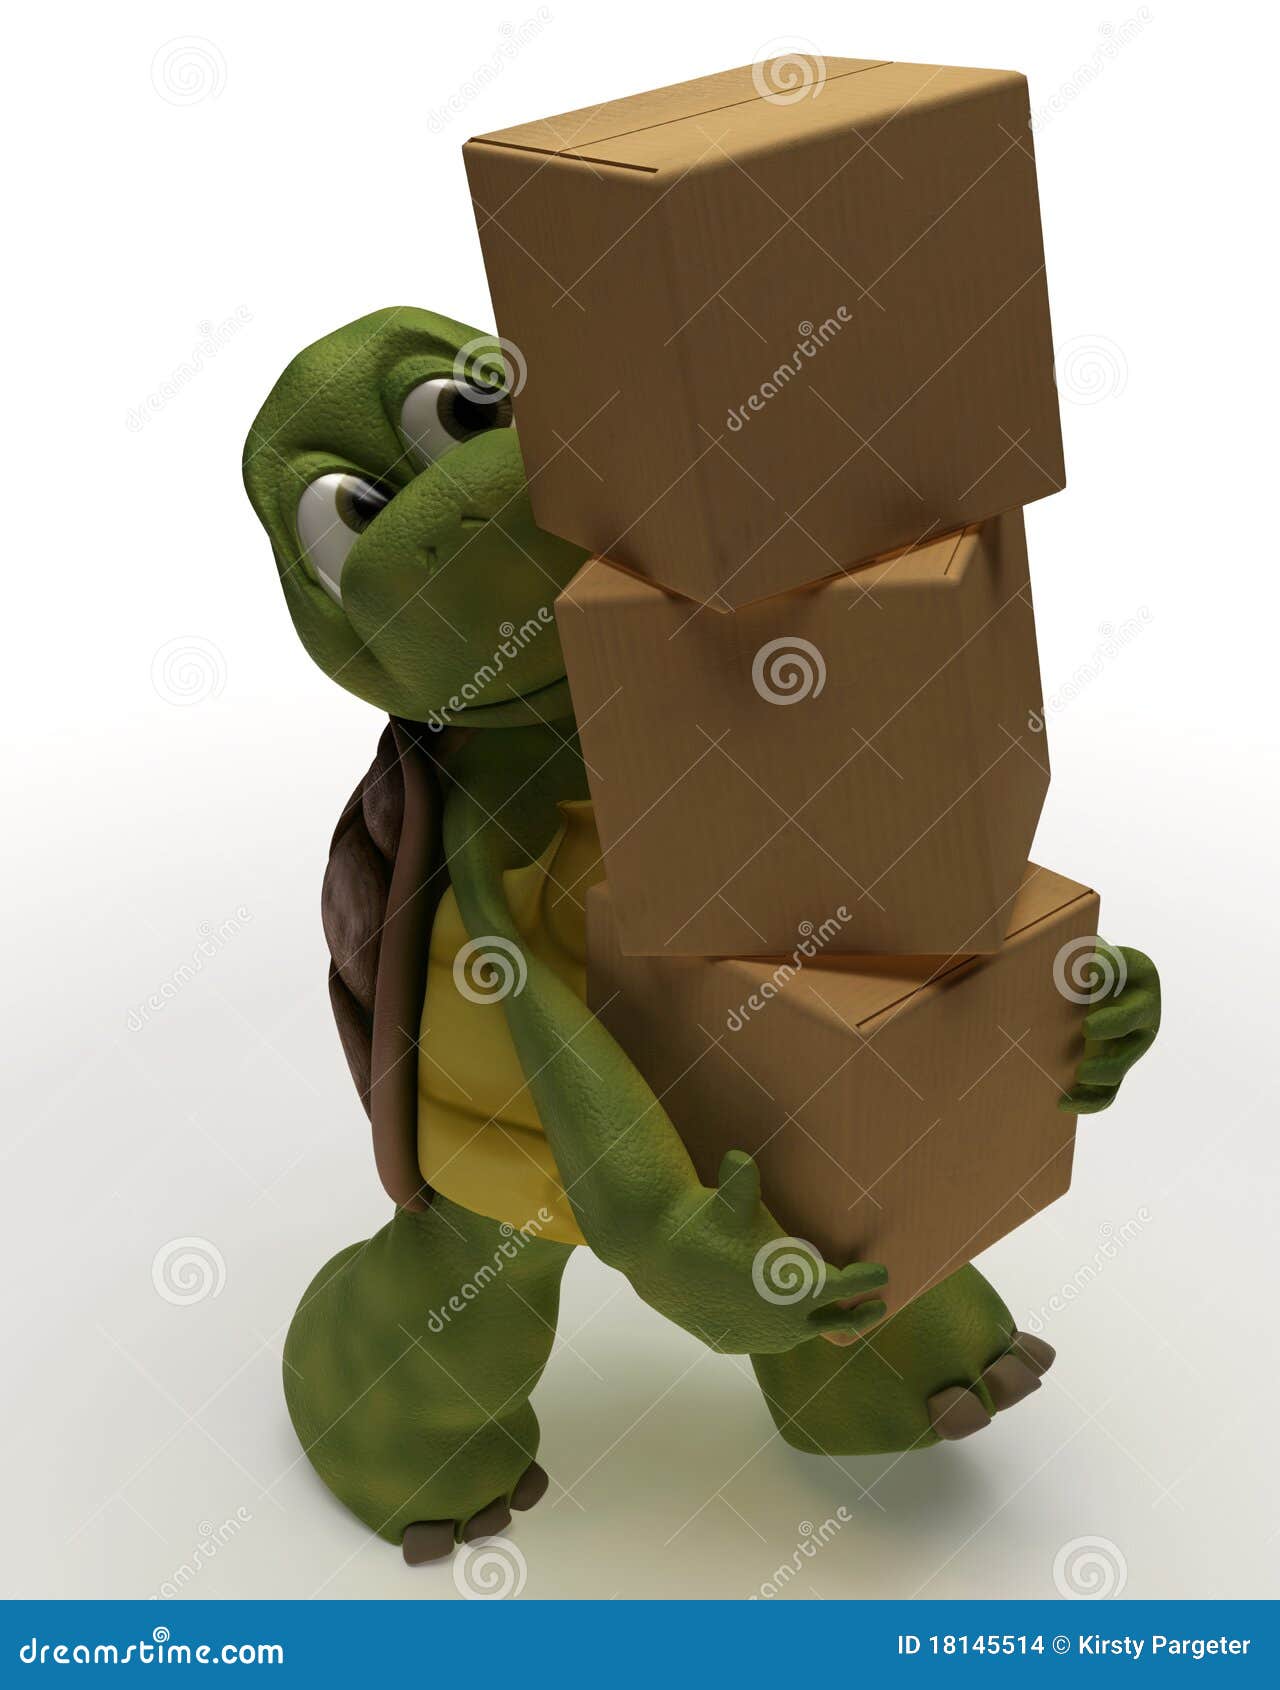 Schildkröten-Karikatur-tragender Verpackungs-Karton. 3D übertragen von einem Schildkröten-Karikatur-tragenden Verpackungs-Karton